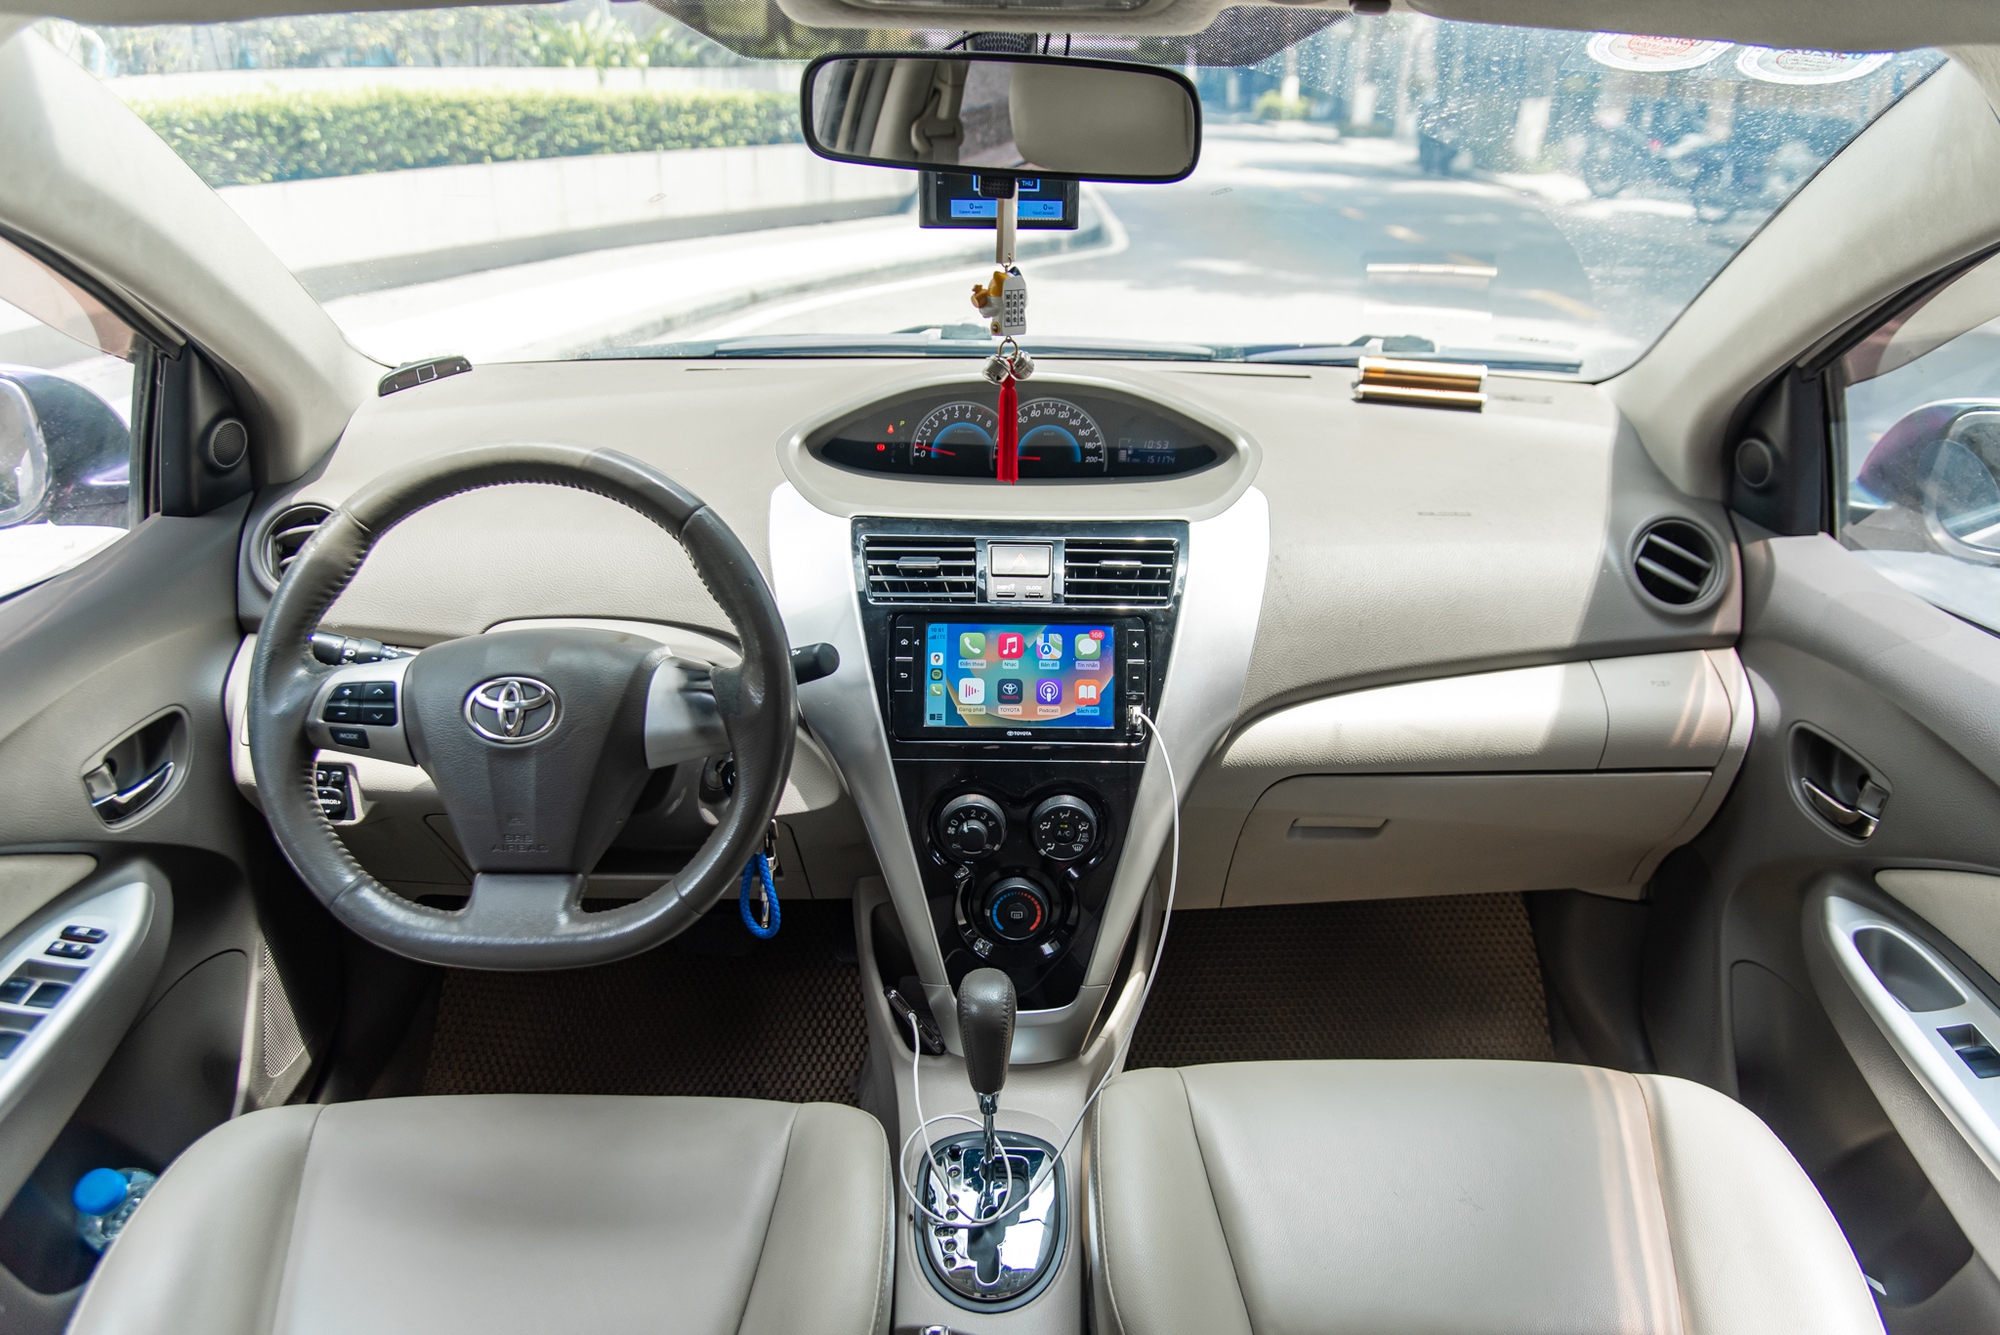 Bỏ 2,5 triệu đồng độ màn hình cho Toyota Vios 2013: Xứng đáng giá tiền, chỉ để sử dụng Apple Carplay - Ảnh 8.